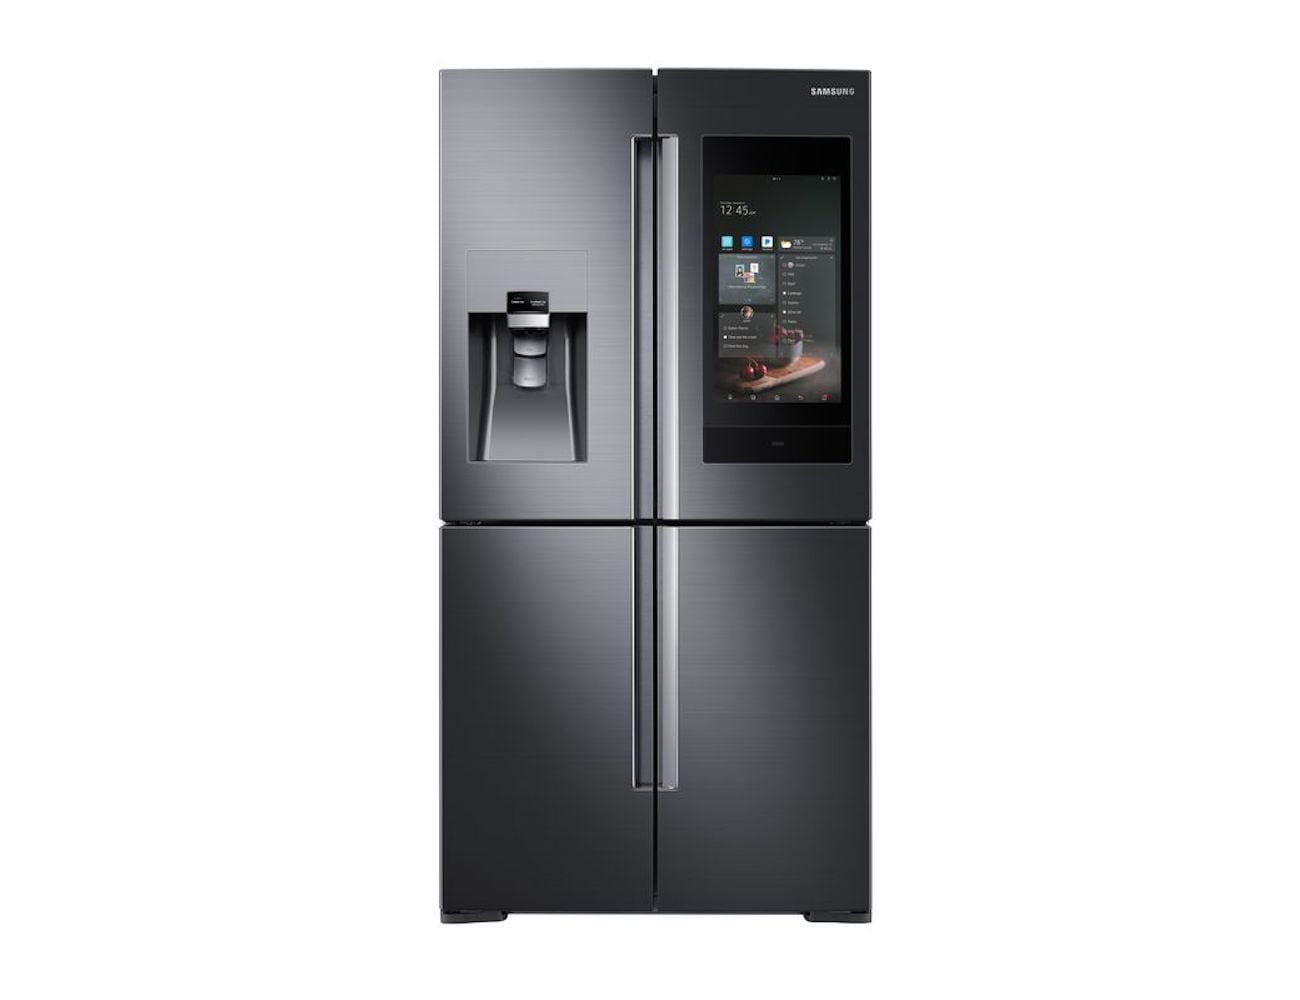 Samsung Family Hub Smart Refrigerator 2018 » Gadget Flow concernant The Samsung Family Hub 